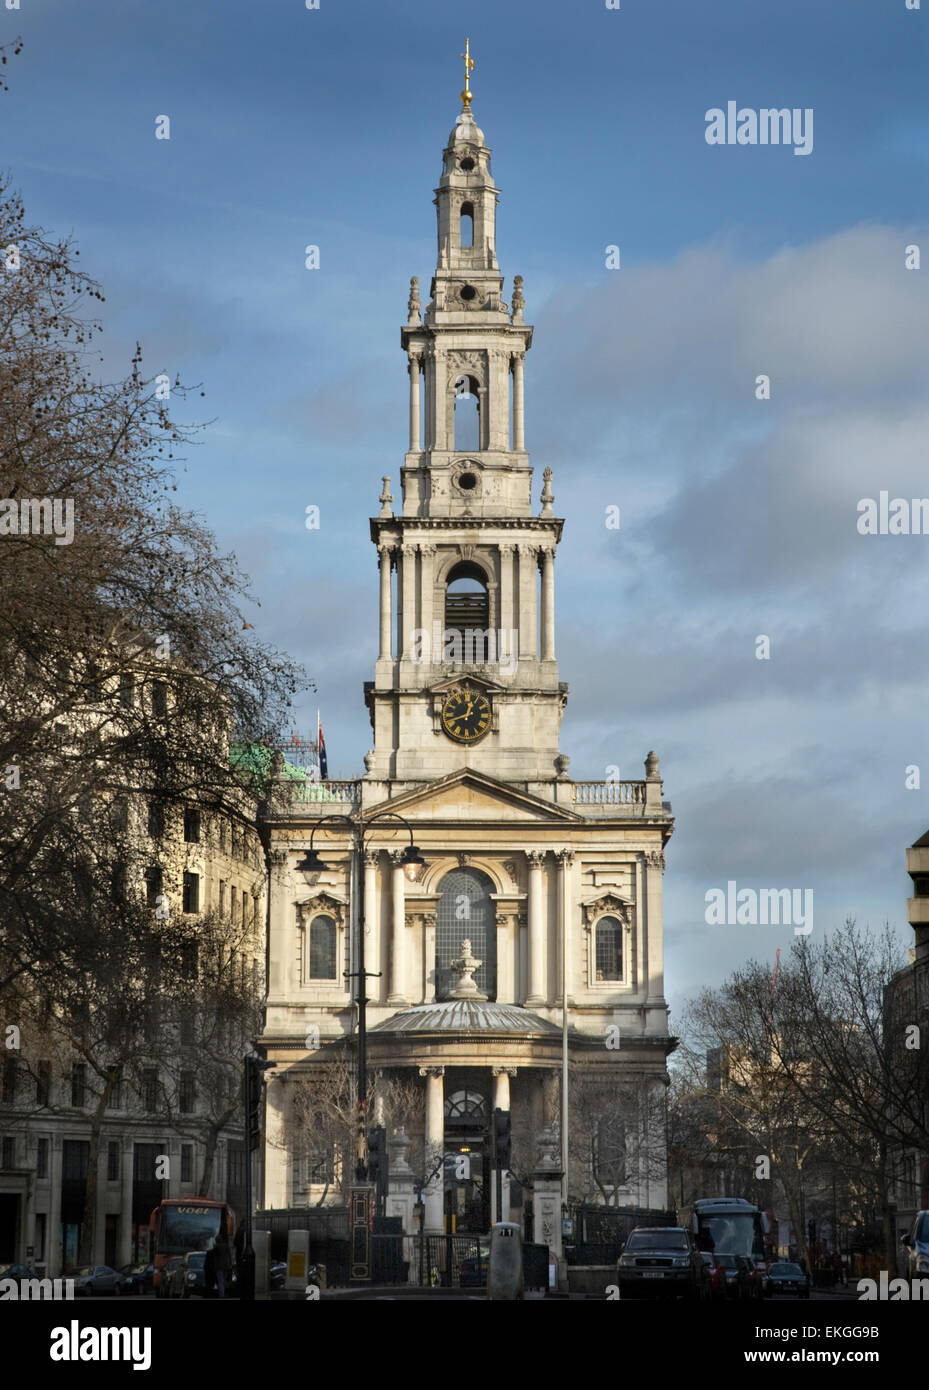 St Mary le Strand Church, Strand, London Stock Photo